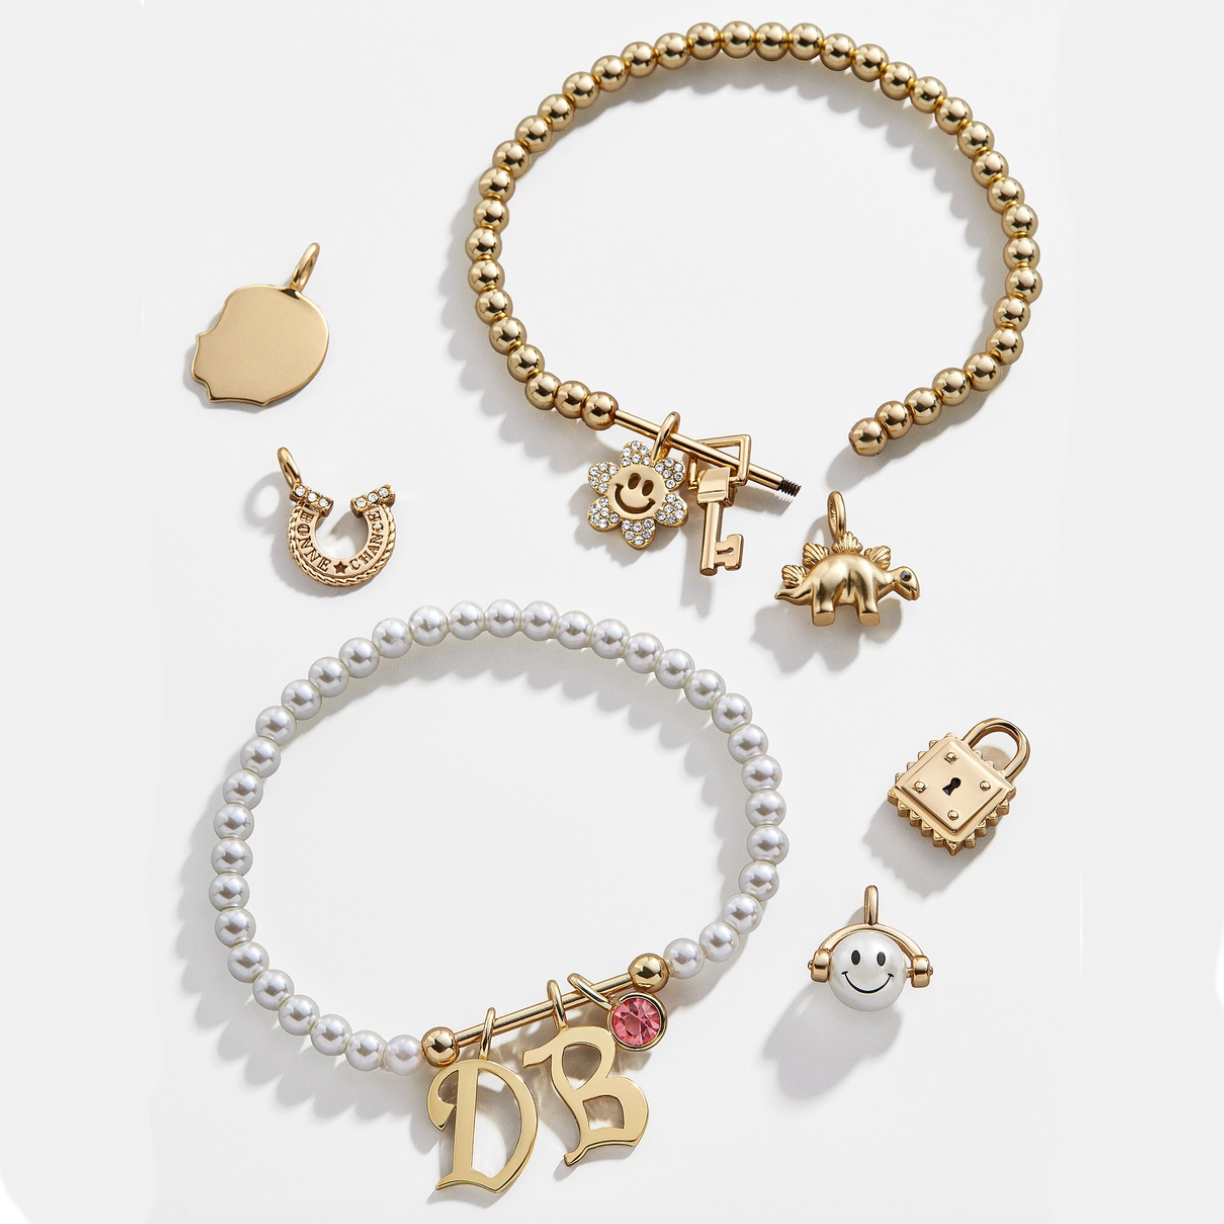 jewelry zodiac sign